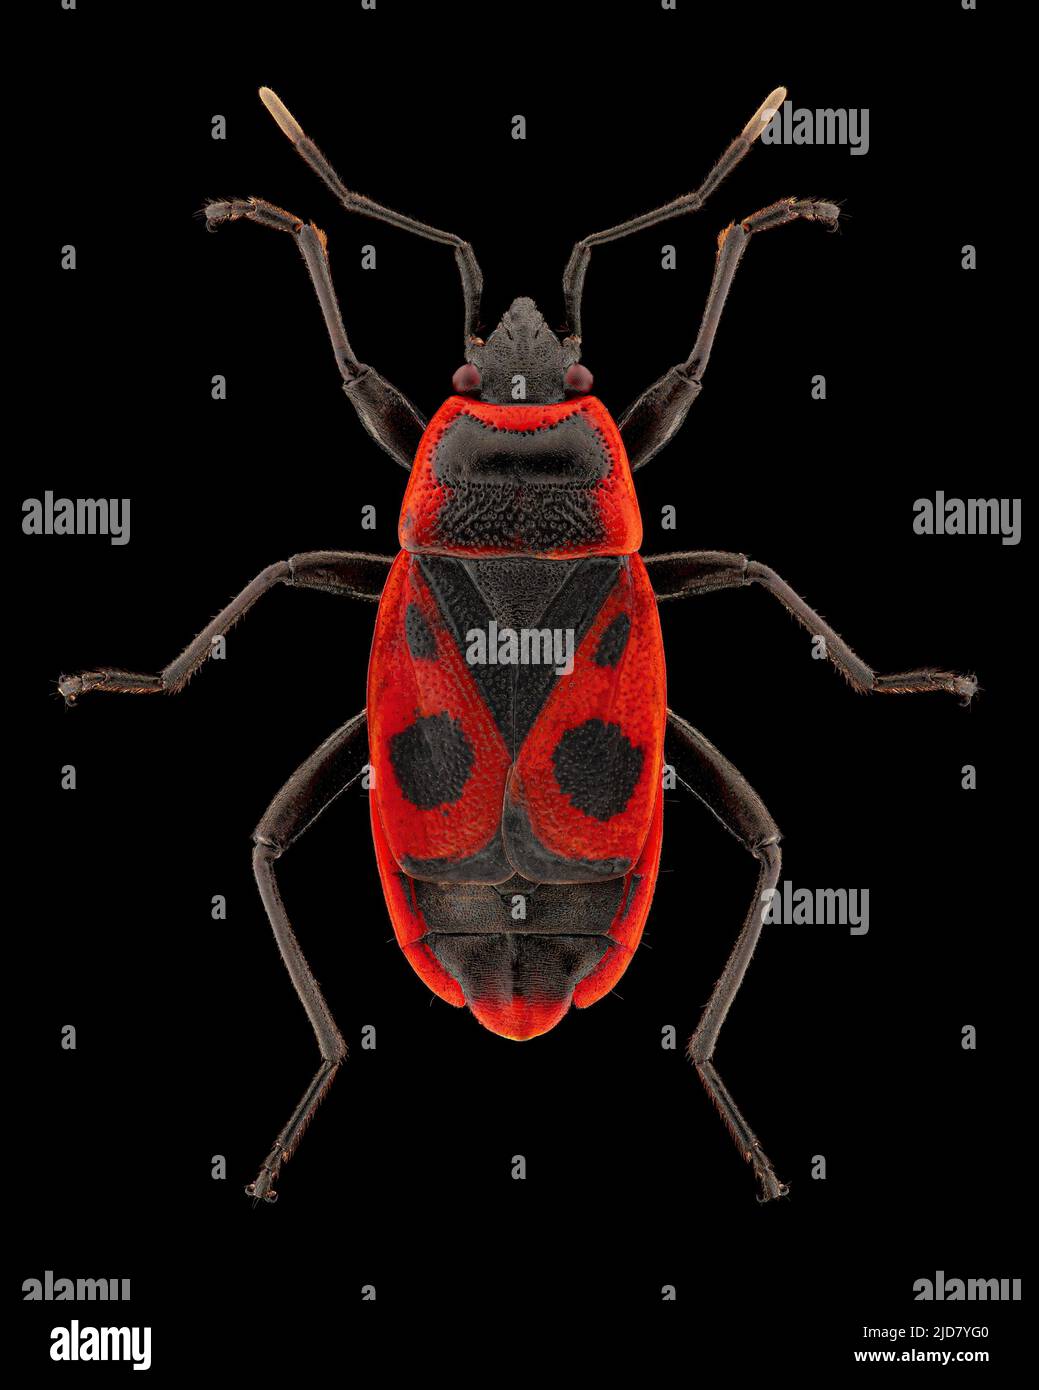 Kamenkäfer (Pyrrhocoris apterus) Entomologie-Exemplar mit gespreizten Beinen und Antennen isoliert auf reinem schwarzen Hintergrund. Studiobeleuchtung. Makrofotografie Stockfoto